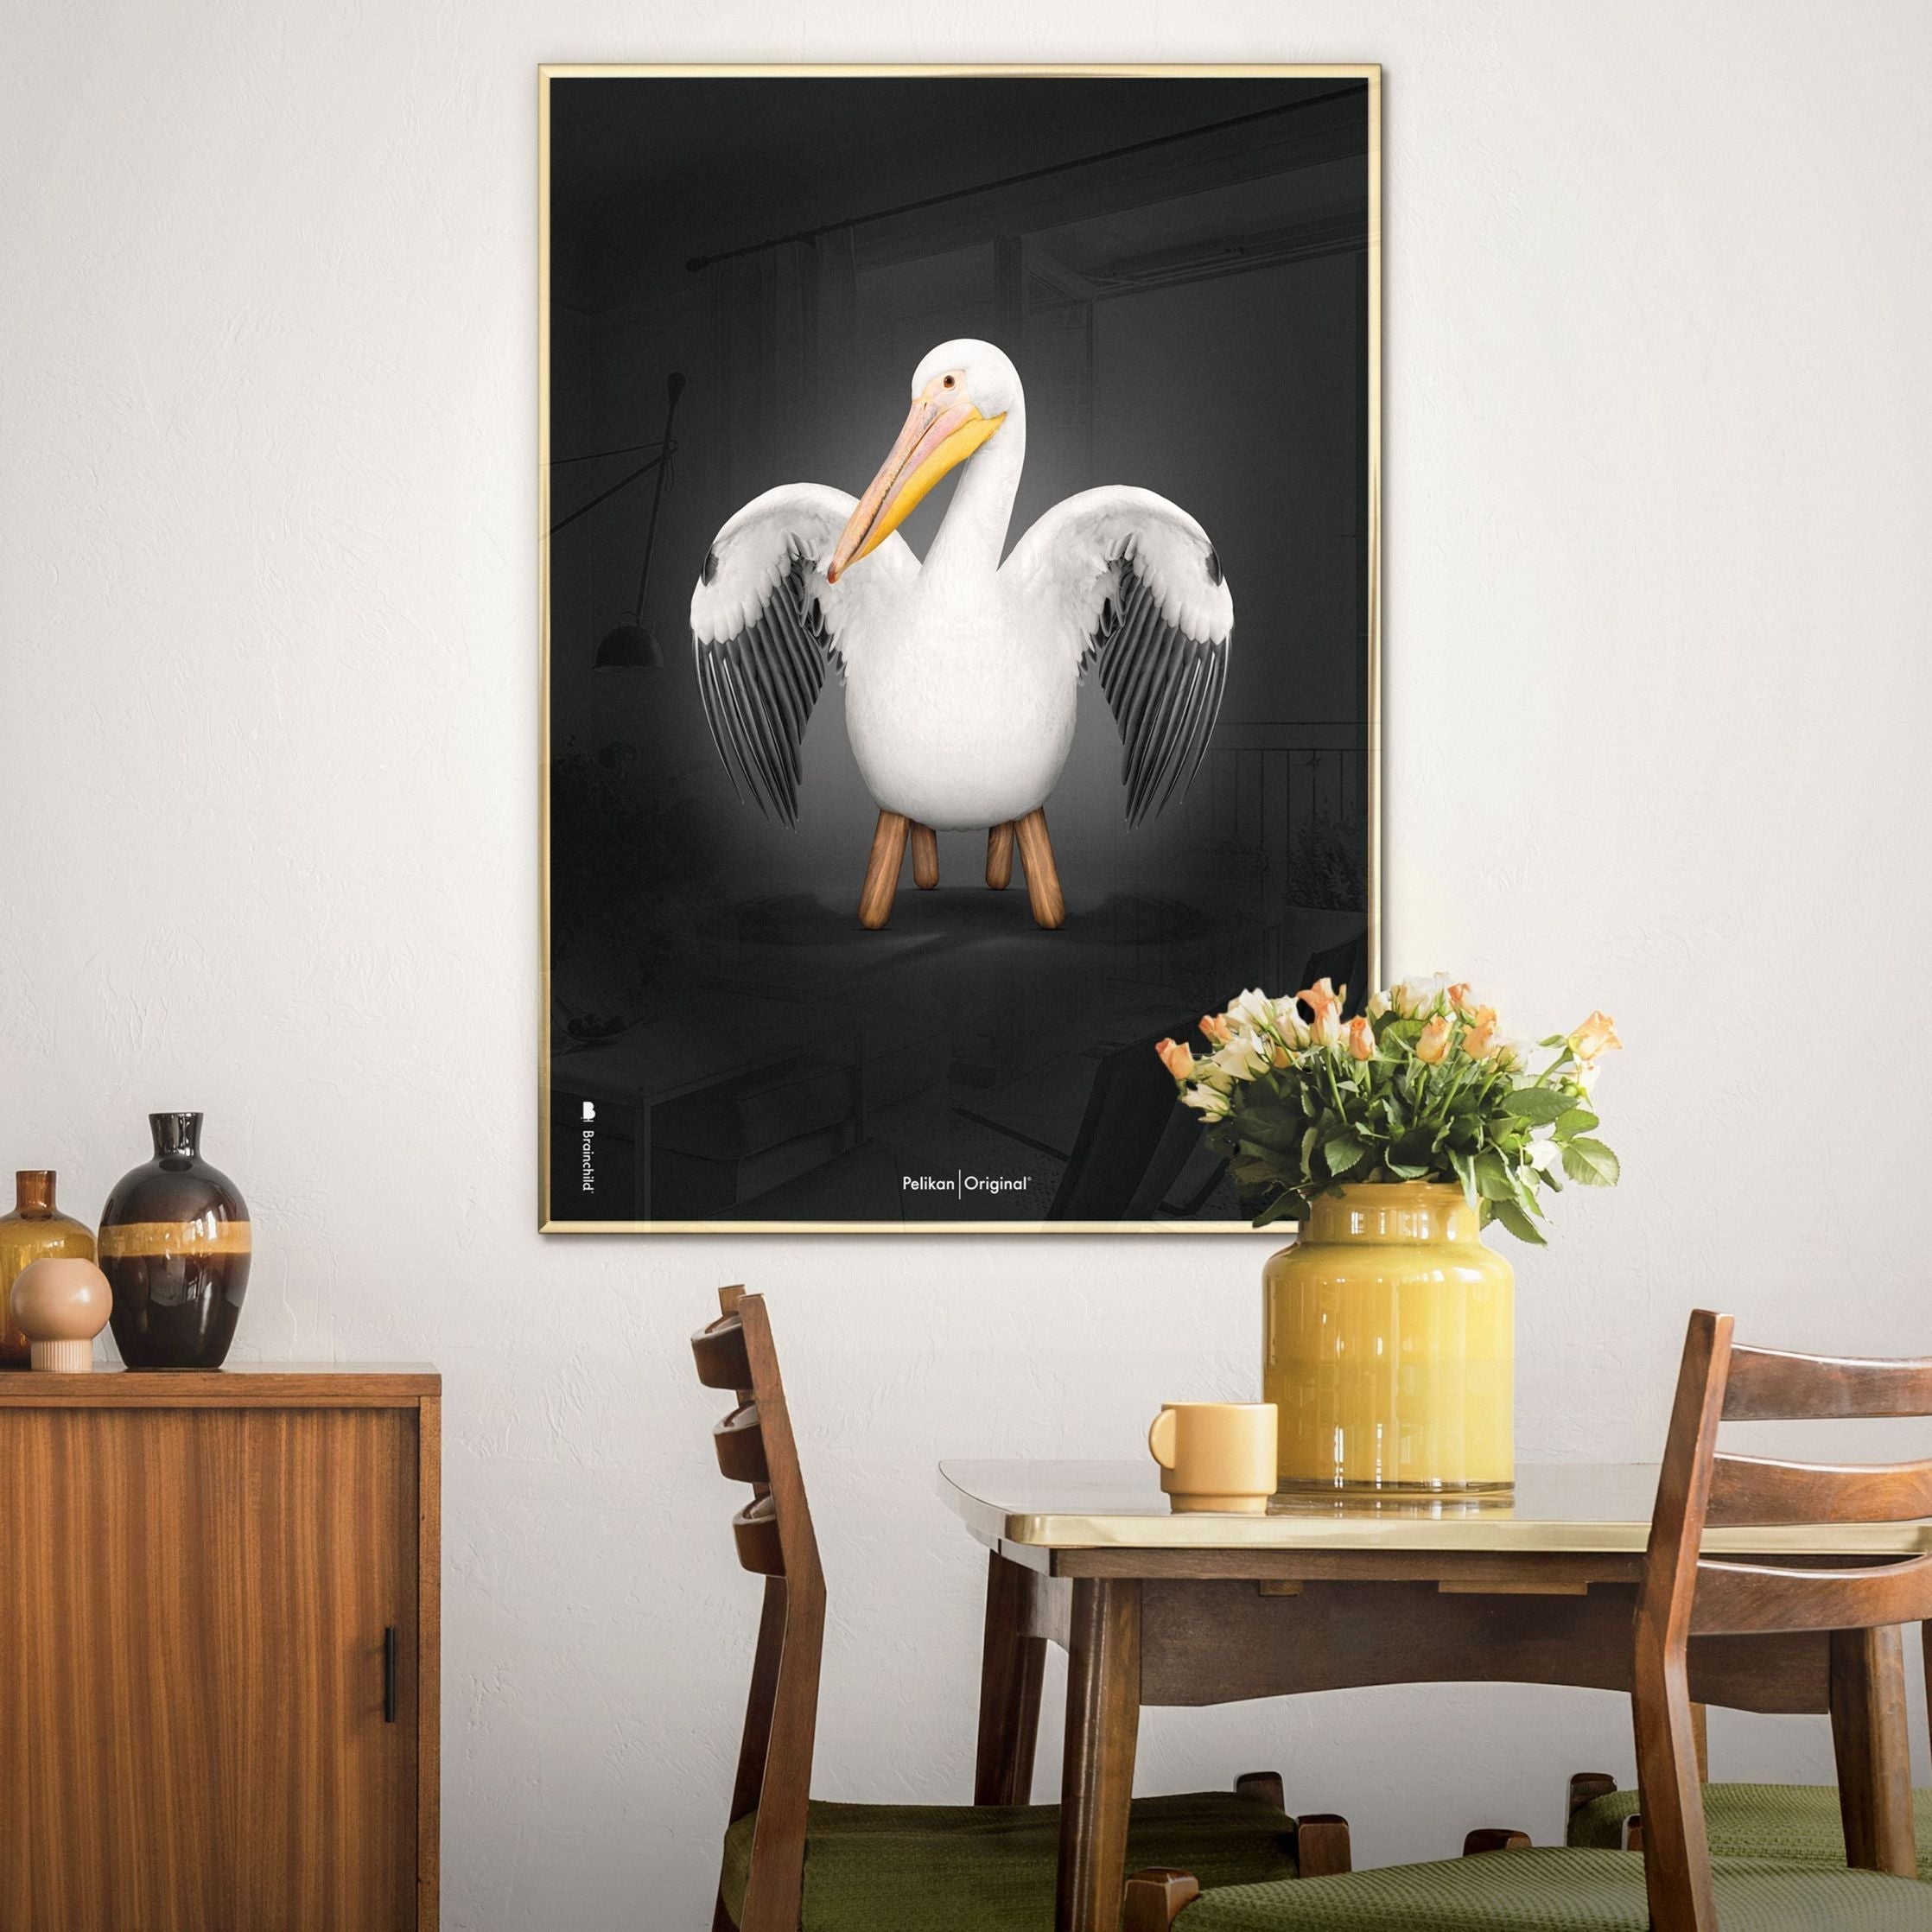 Brainchild Pelikan Classic Poster, Rahmen aus hellem Holz 70x100 Cm, schwarzer Hintergrund